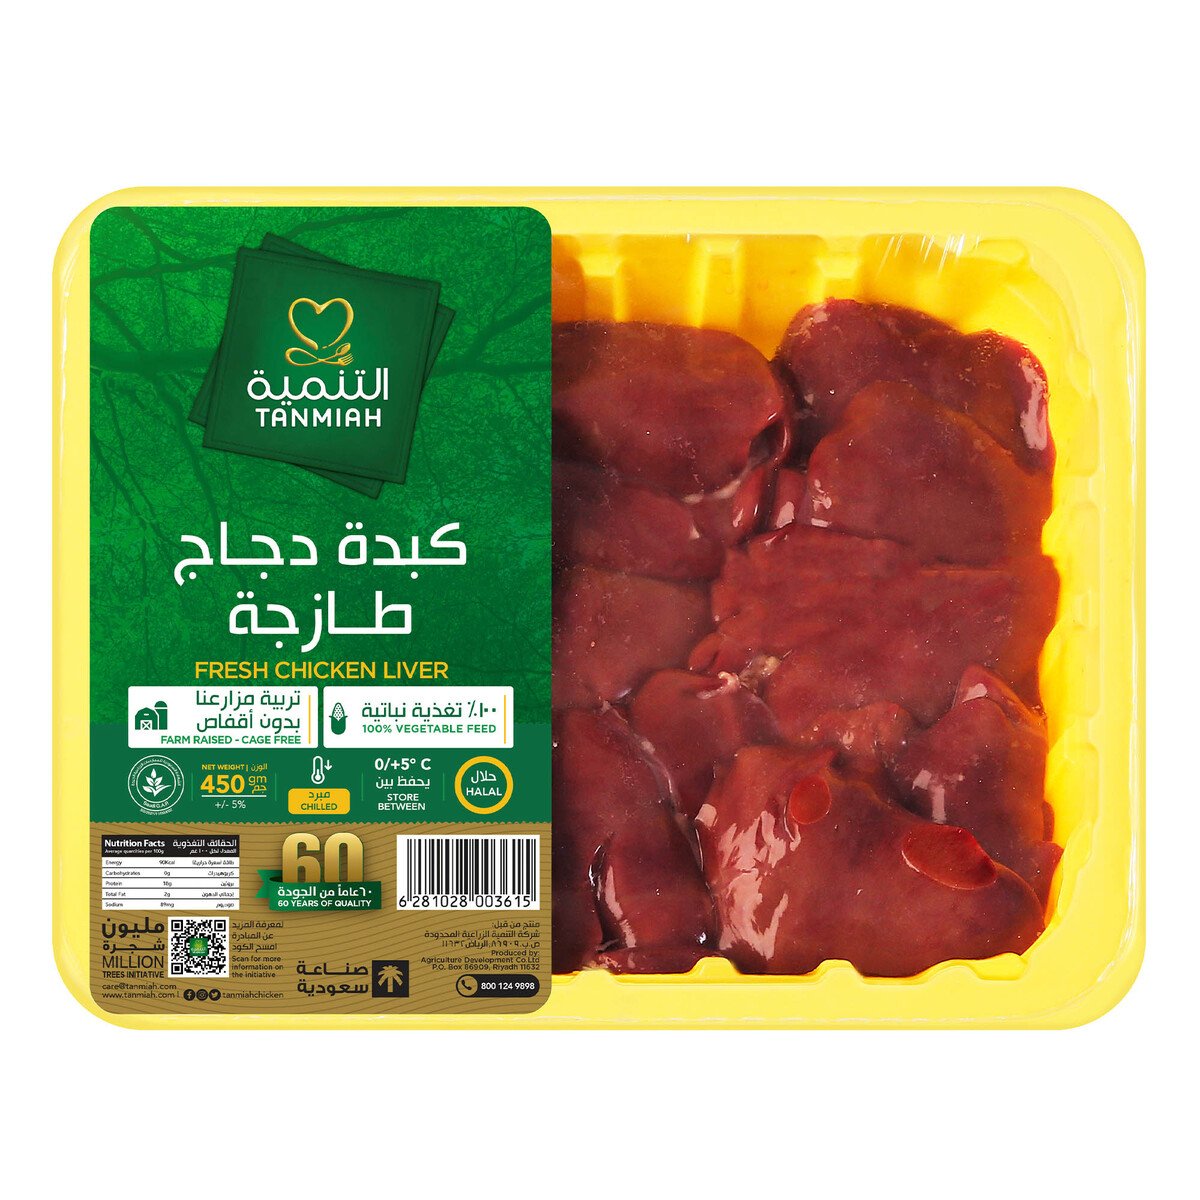 اشتري قم بشراء التنمية كبدة دجاج 450 جم Online at Best Price من الموقع - من لولو هايبر ماركت Poultry Offals في السعودية